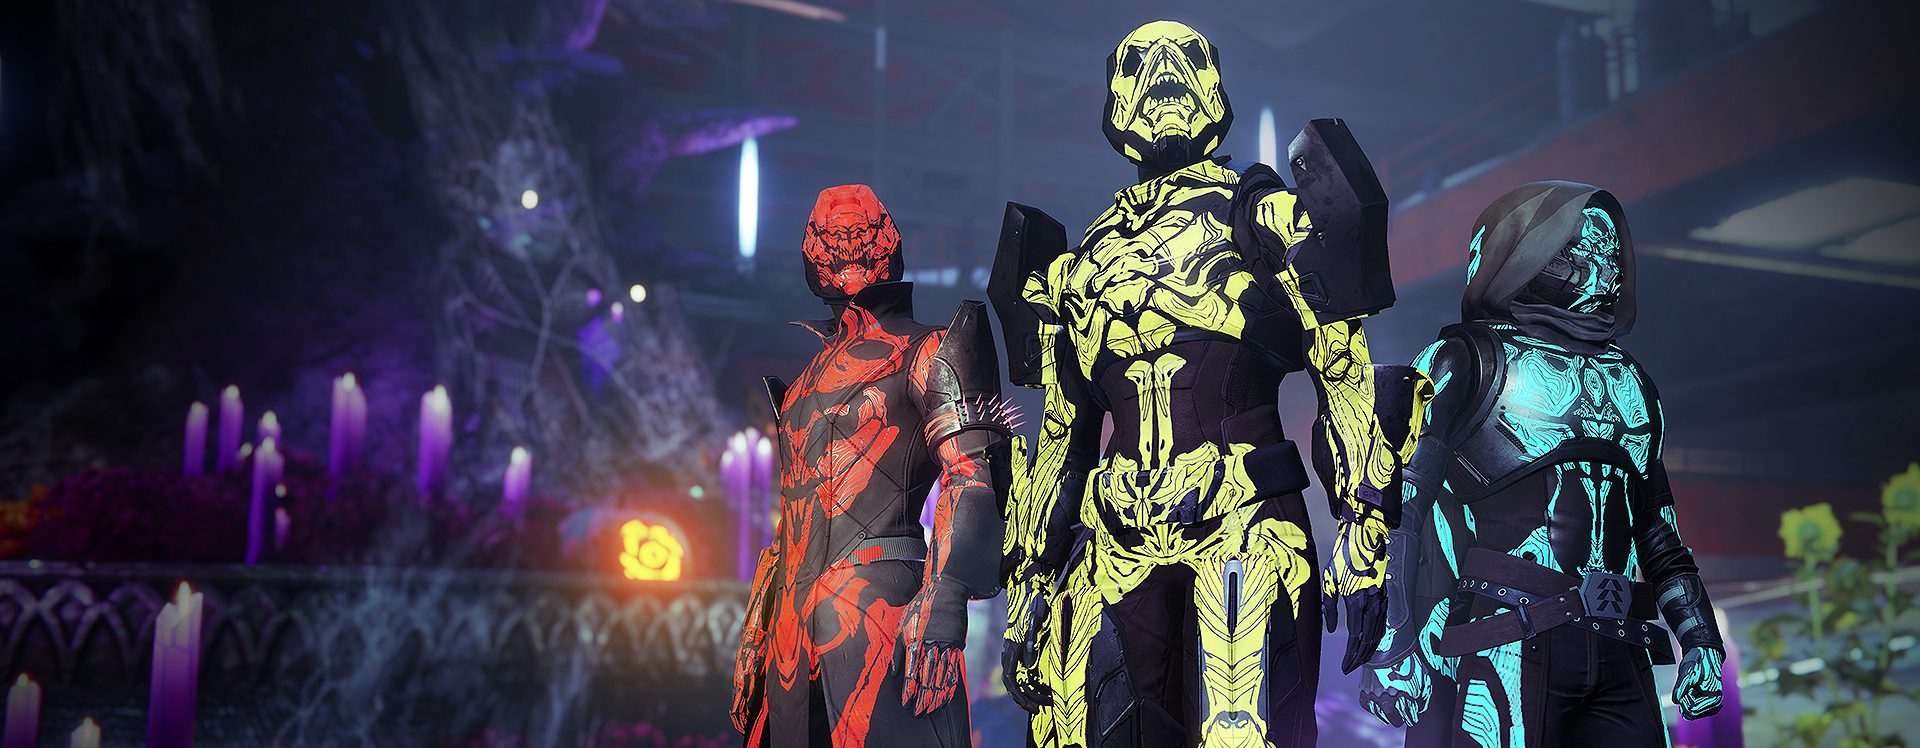 Mit Techno-Beats und Neon-Leuchten – So stimmt Destiny 2 auf Halloween ein